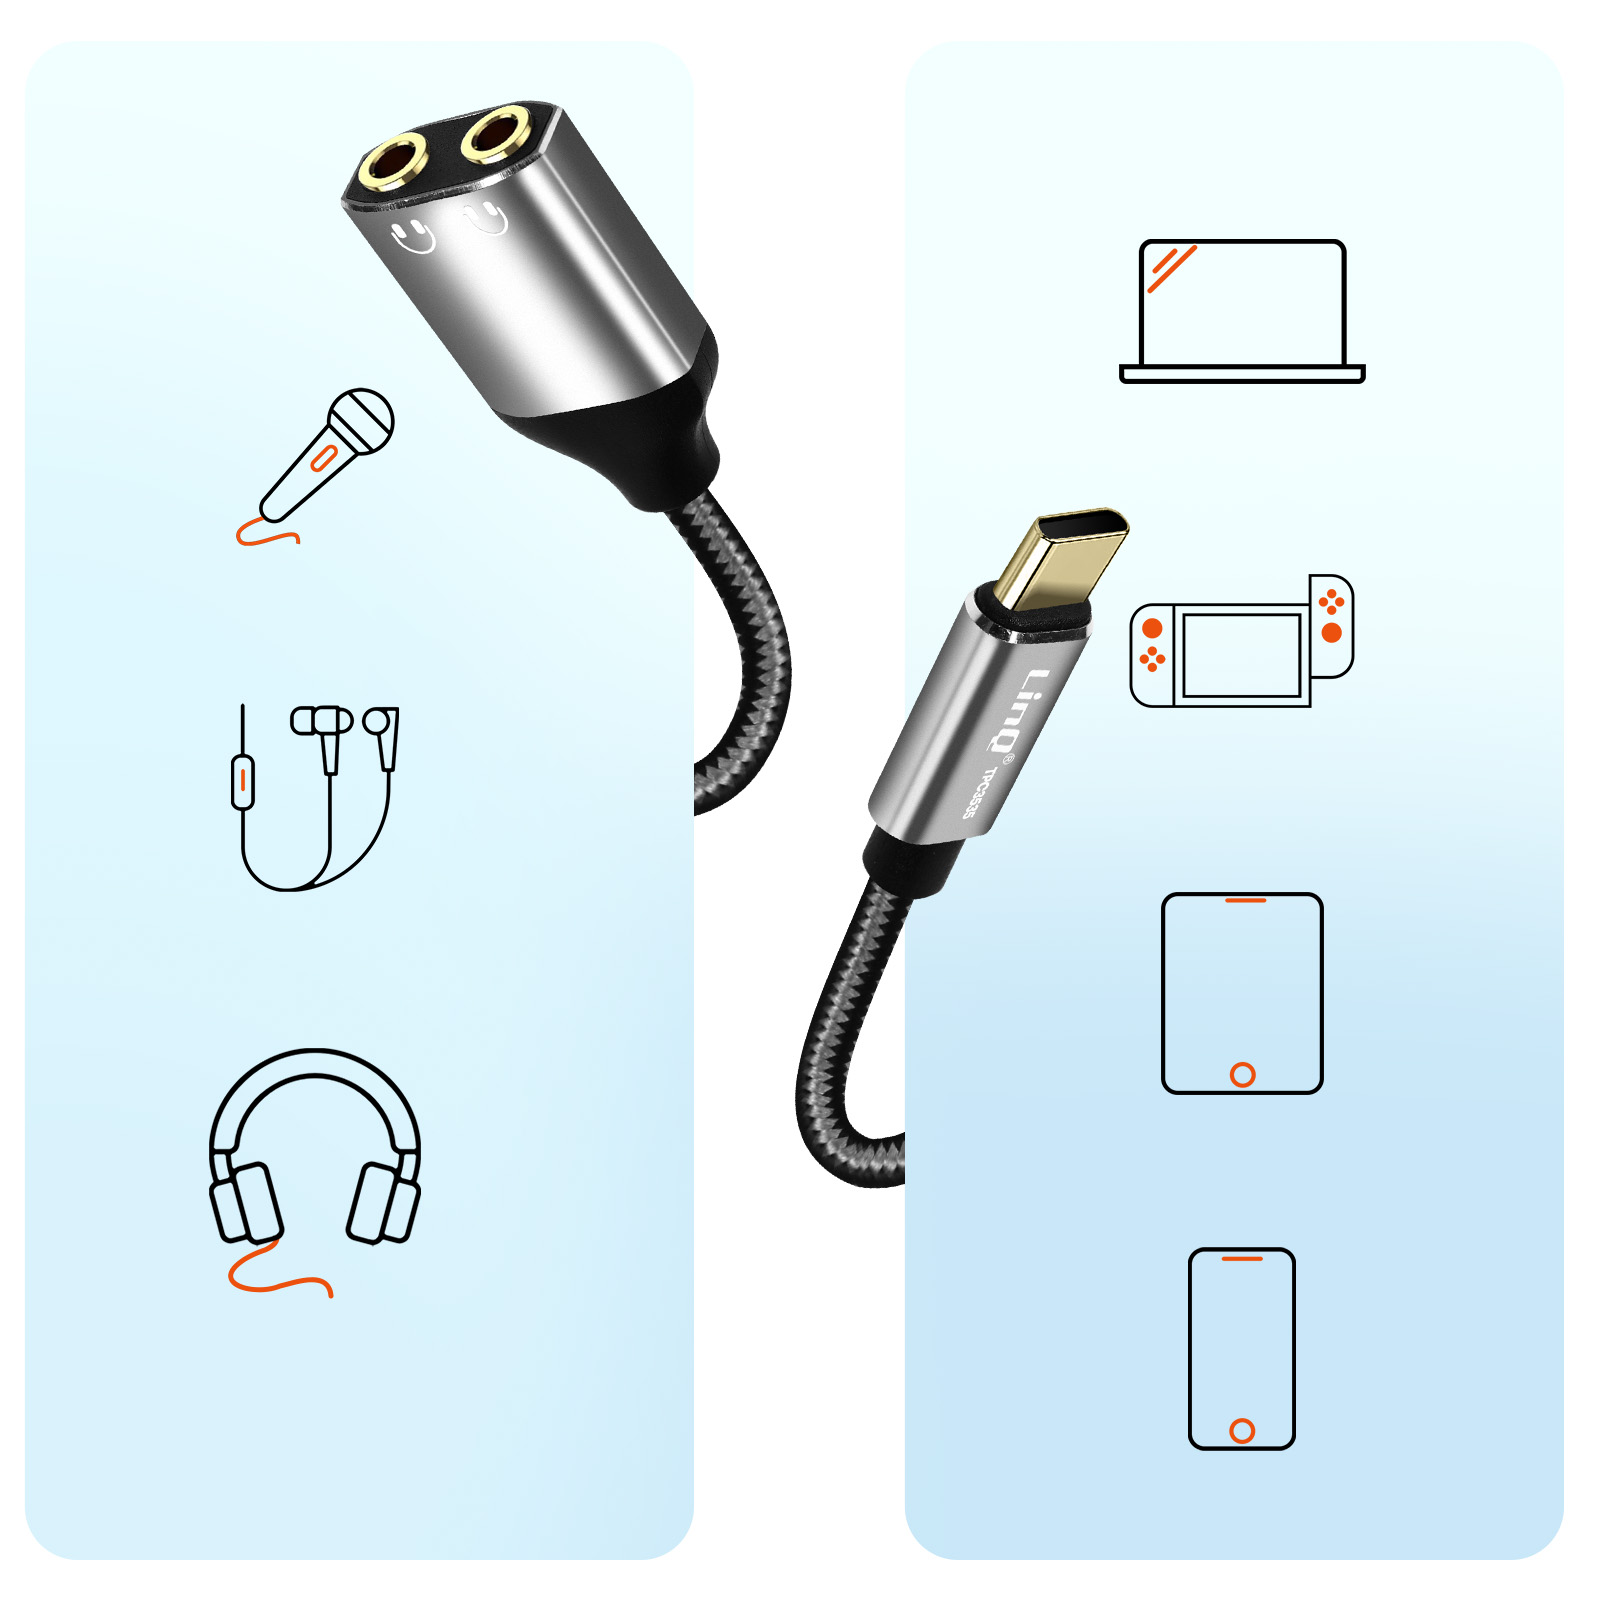 Adaptateur pour écouteur prise USB-C/sortie jack femelle 3,5 mm